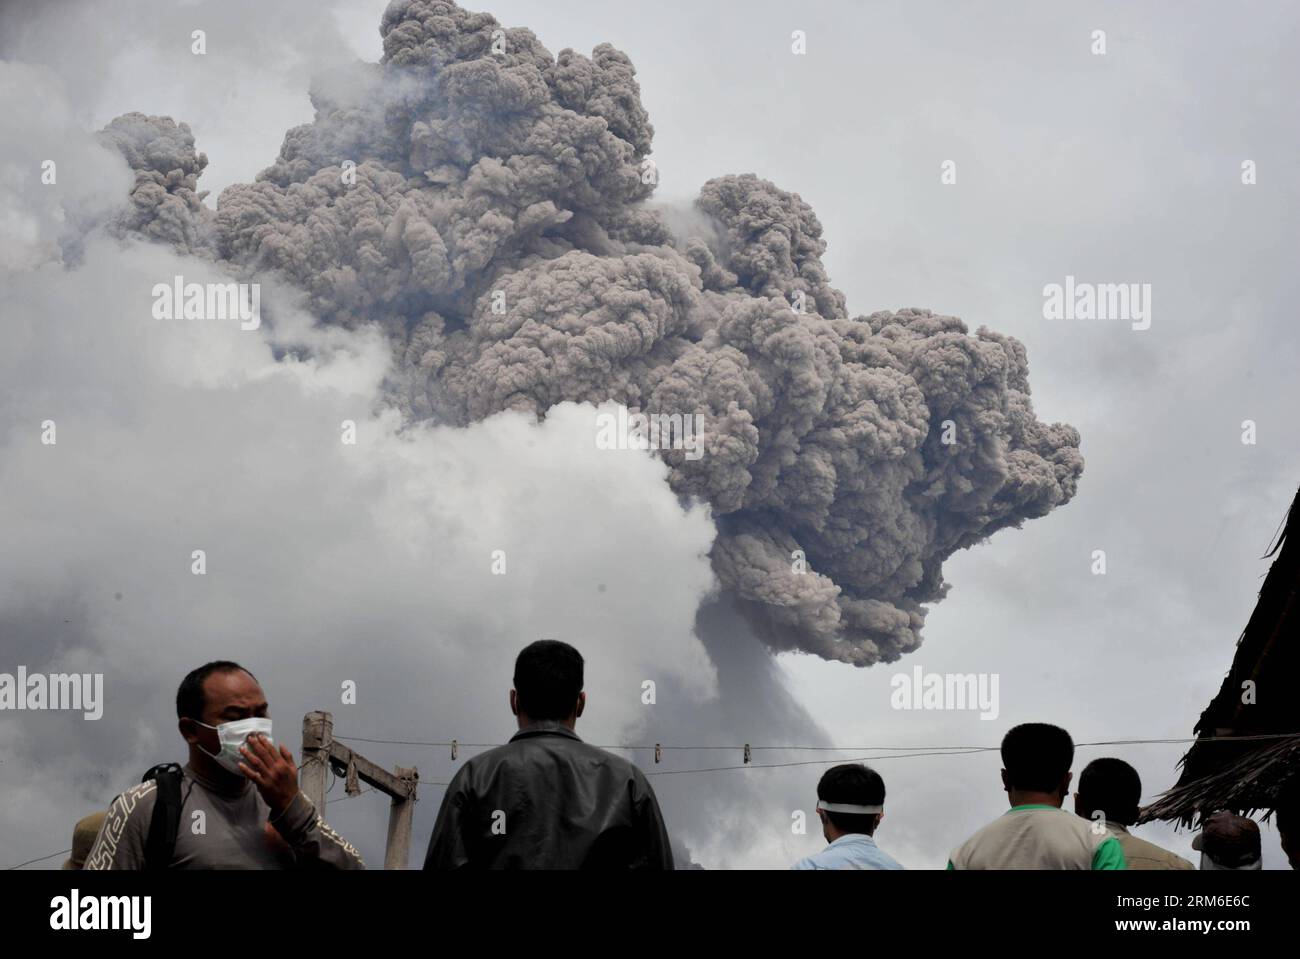 (140107) -- SUMATRA SETTENTRIONALE, 7 gennaio 2014. (Xinhua) -- la gente guarda come il Monte Sinabung lancia materiali vulcanici durante un'eruzione a Sumatra settentrionale, Indonesia, 7 gennaio 2014. Oltre 21.800 persone hanno cercato rifugio in 33 rifugi nel distretto di Karo nella provincia di Sumatra settentrionale, mentre il vulcano Sinabung ha continuato a spargere cenere e lava lunedì, ha detto un funzionario indonesiano. (Xinhua/Agung Kuncahya B.) INDONESIA-SUMATRA SETTENTRIONALE-MONTE SINABUNG-ERUPTION PUBLICATIONxNOTxINxCHN Sumatra settentrionale 7 gennaio 2014 le celebrità di XINHUA guardano come il Monte Sinabung lancia materiale vulcanico durante l'eruzione nel nord di Sumatra indonesiano Foto Stock